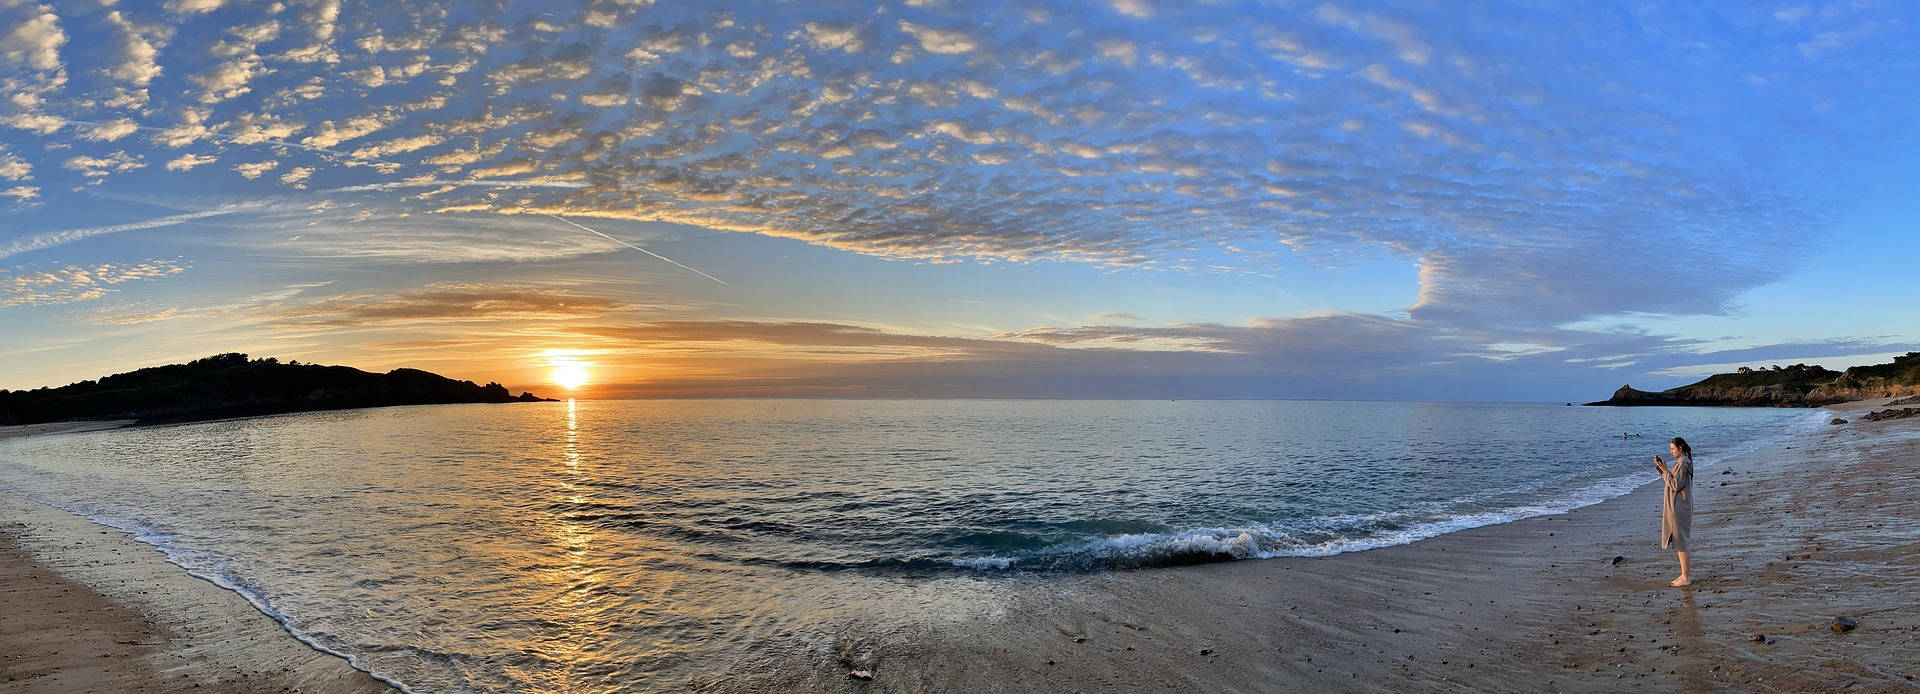 Most Beautiful Desktop Sunset Beach Wallpaper